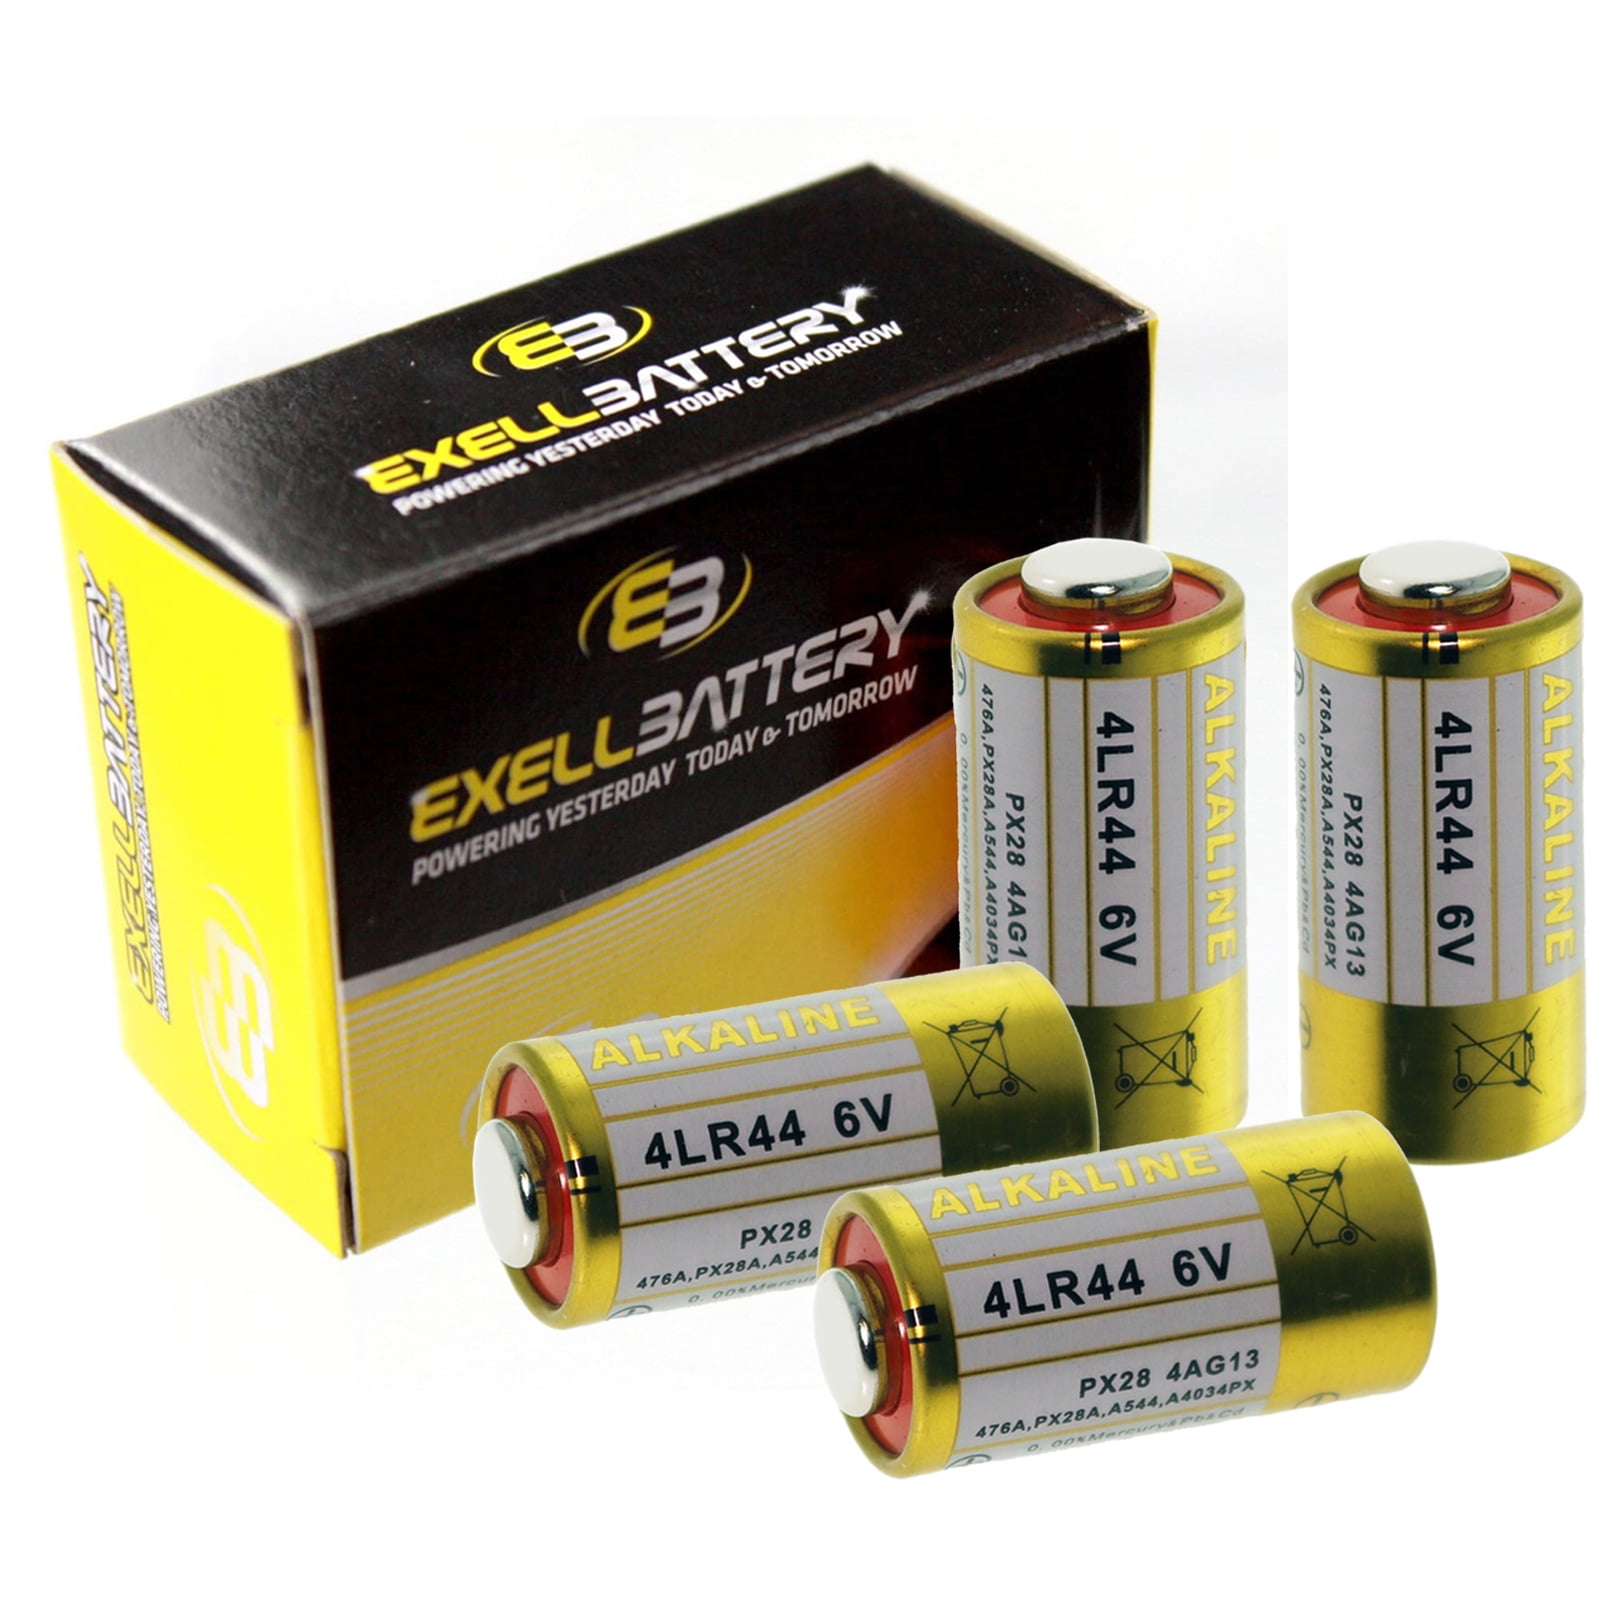 Batterie-Balancer für 2 x 12V Blei-Säure-Batterie-Bank-System Nx12v Batterie-Equalizer